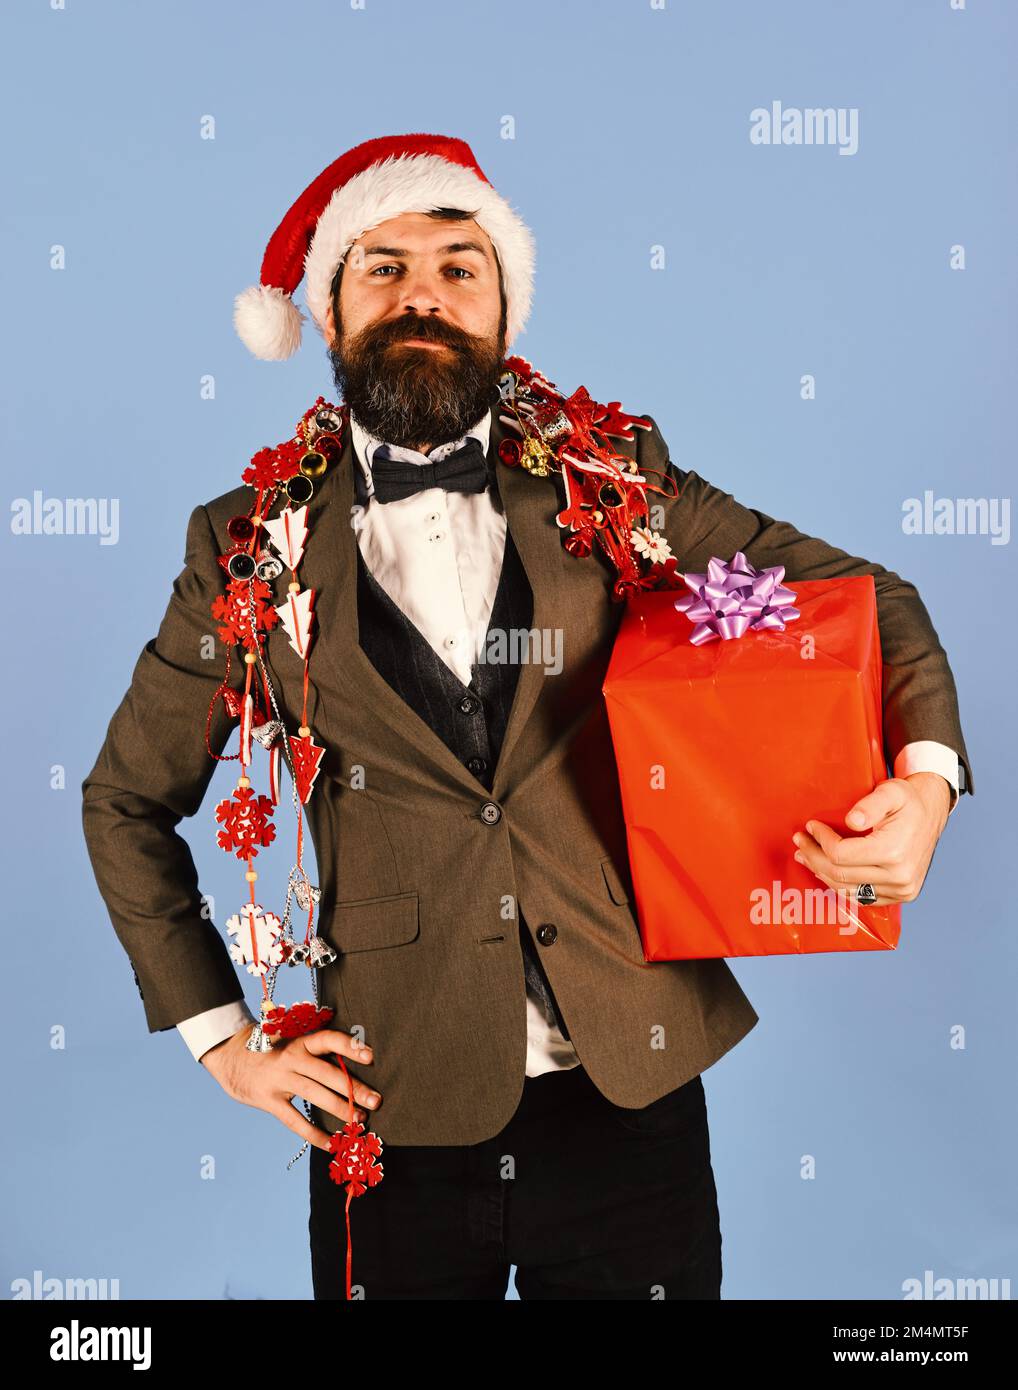 Le Manager avec la barbe tient le cadeau rouge. Homme en costume élégant Banque D'Images